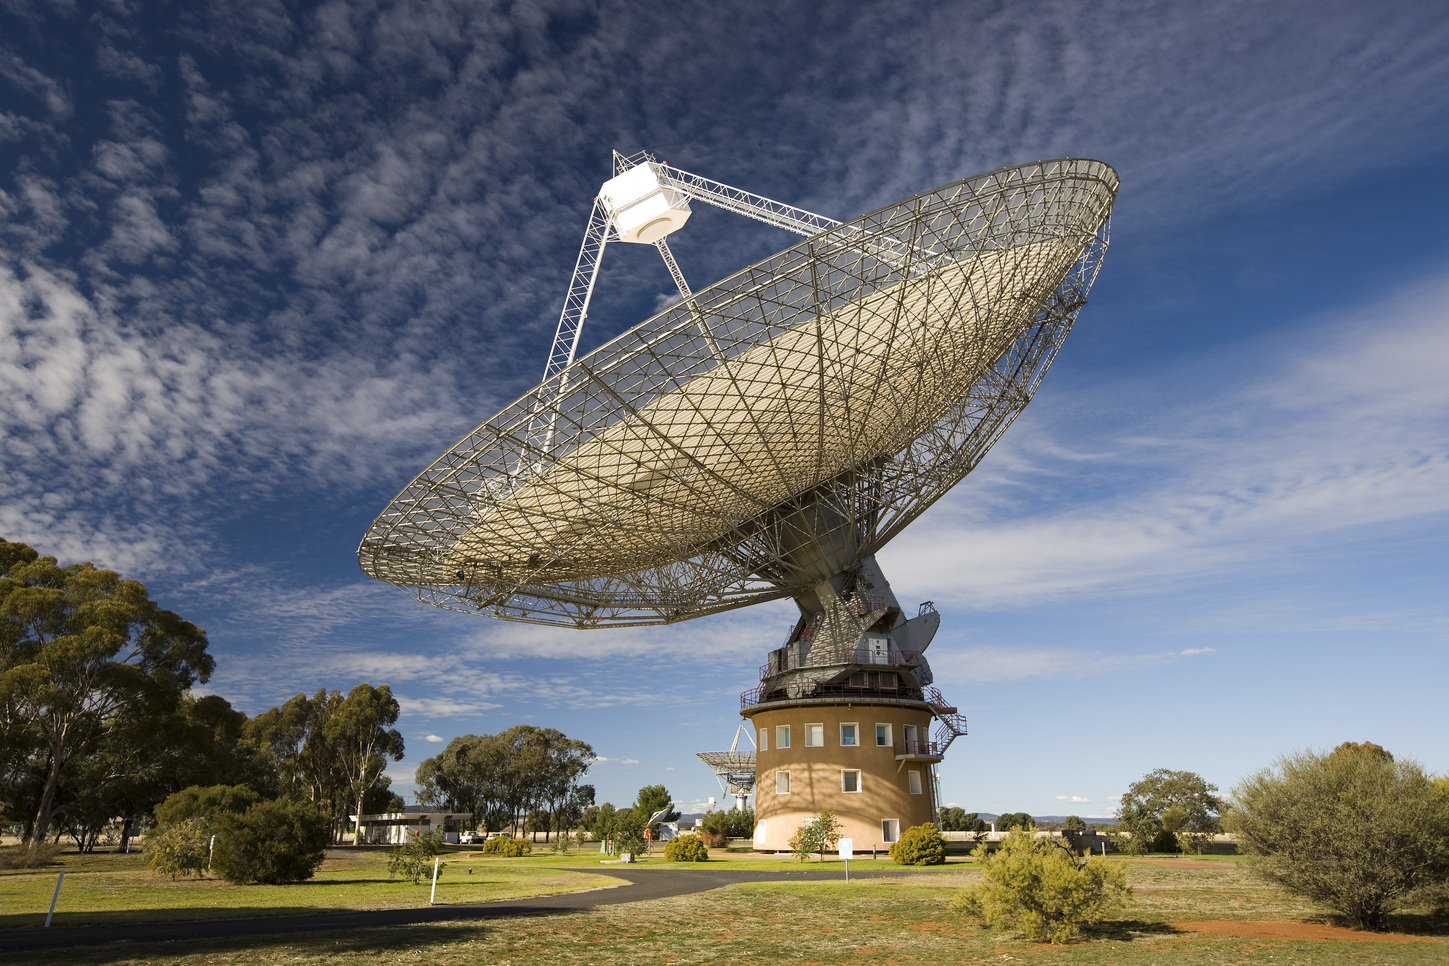 Teleskop v Parkes observatoĹ™i monituraje pulsar v nadÄ›ji, Ĺľe ulovĂ­  prochĂˇzejĂ­cĂ­  gravitaÄŤnĂ­ vlny. (Kredit: CSIRO)